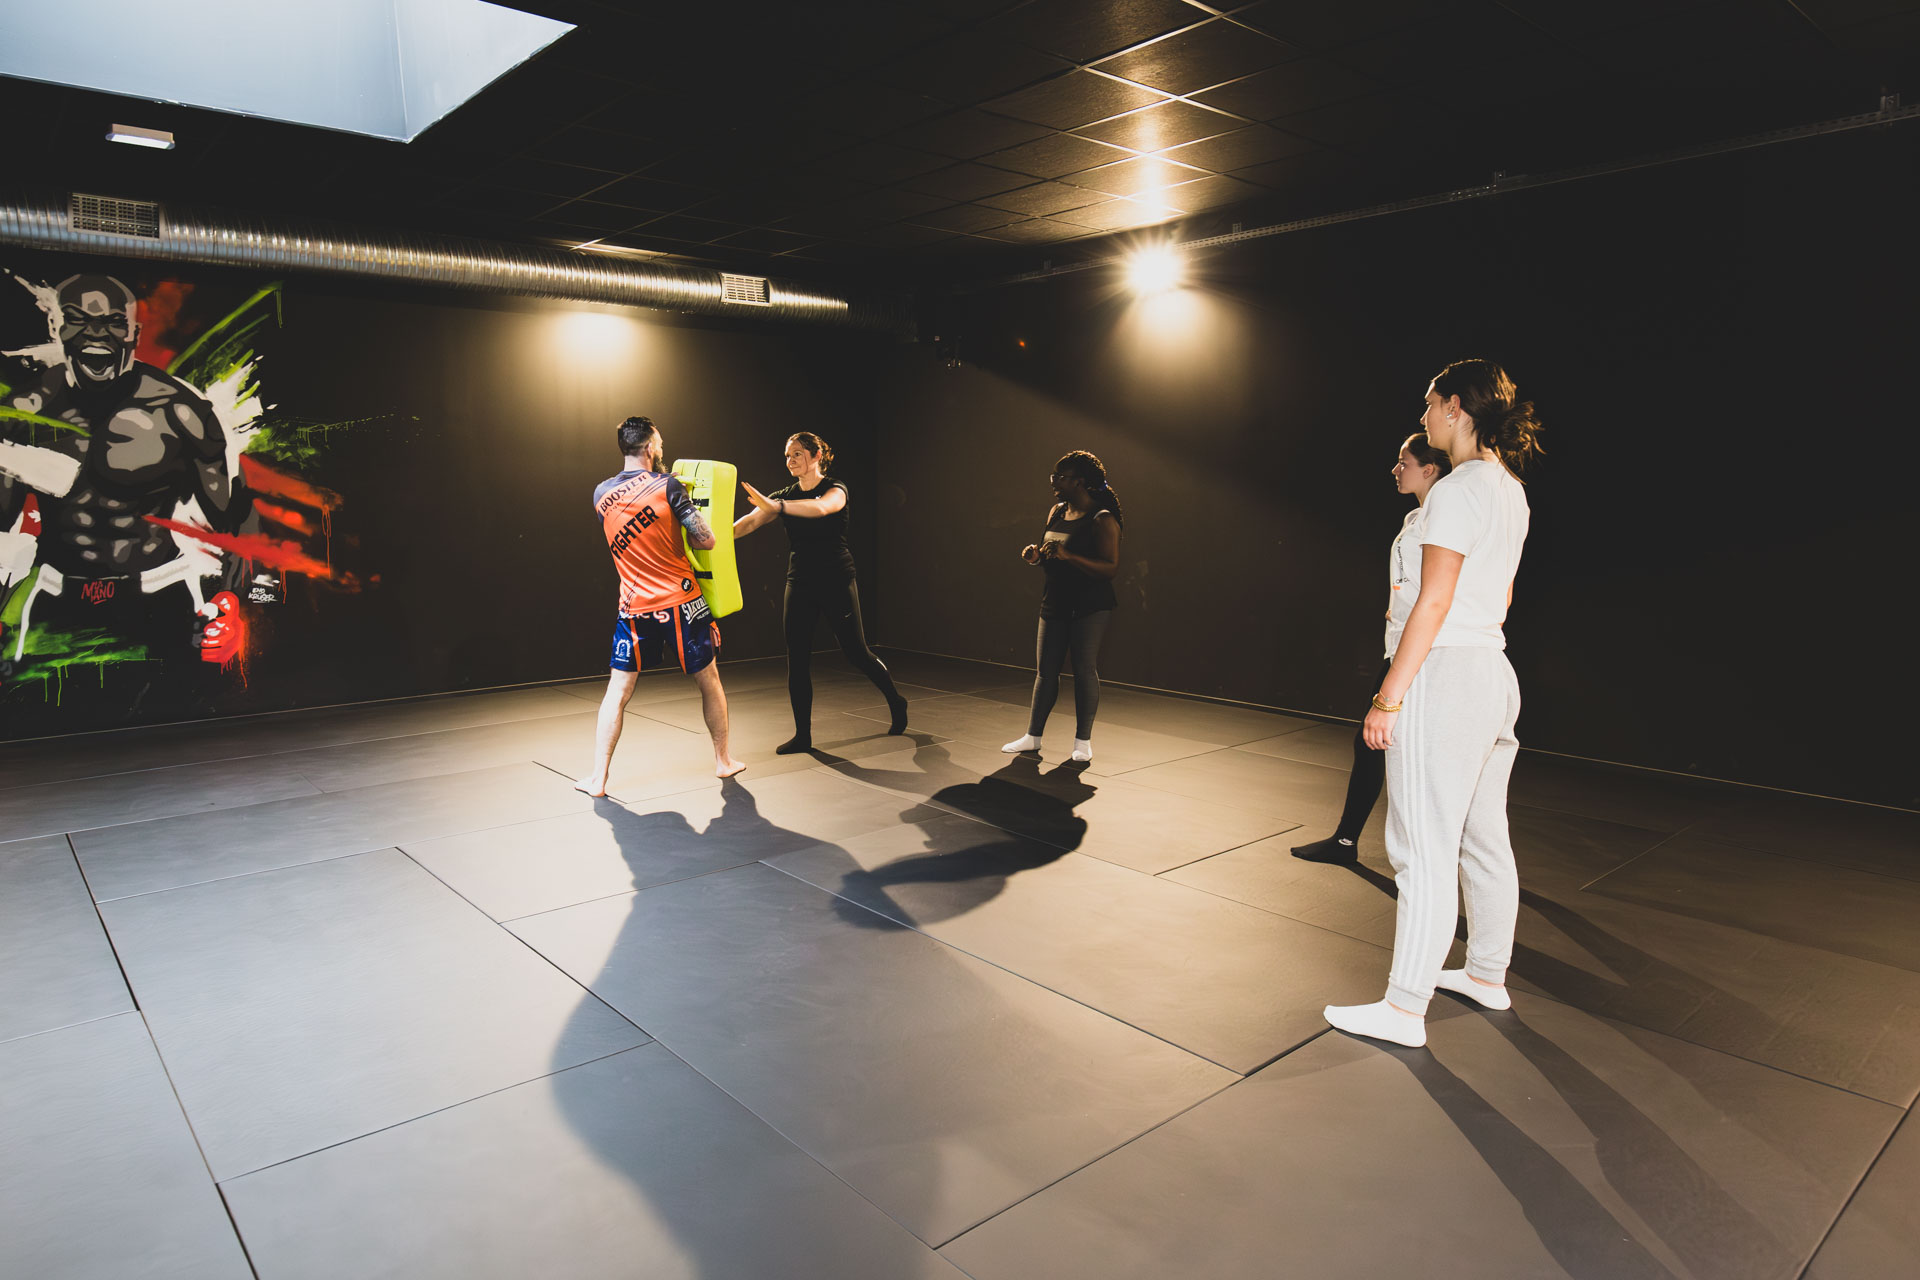 Les cours DE MMA de la salle de sport d'Artligne à Carquefou